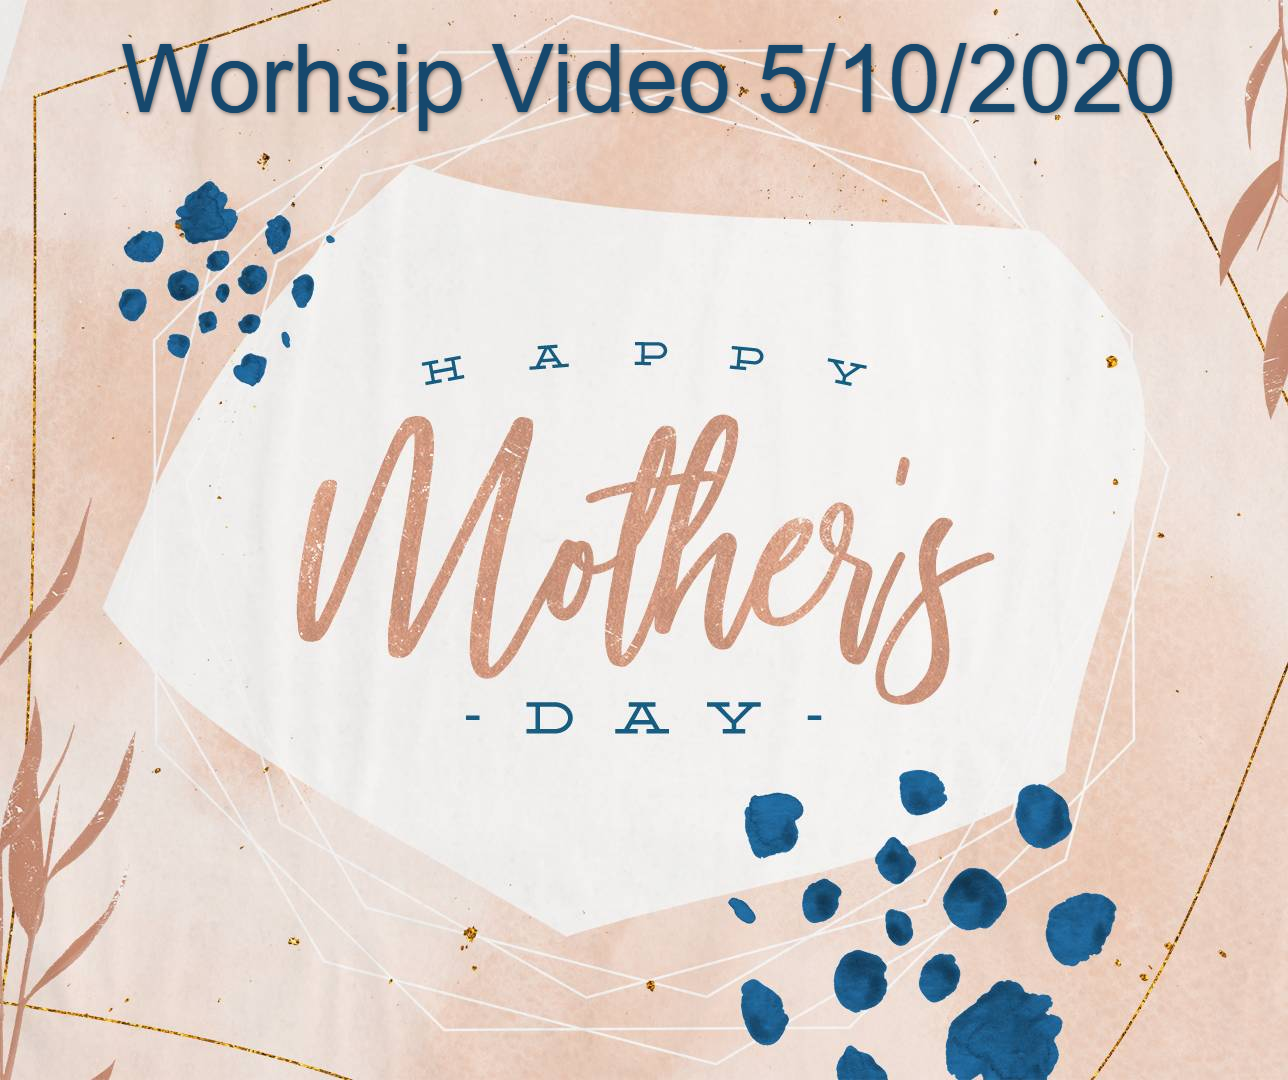 Worship Video 5/10/2020